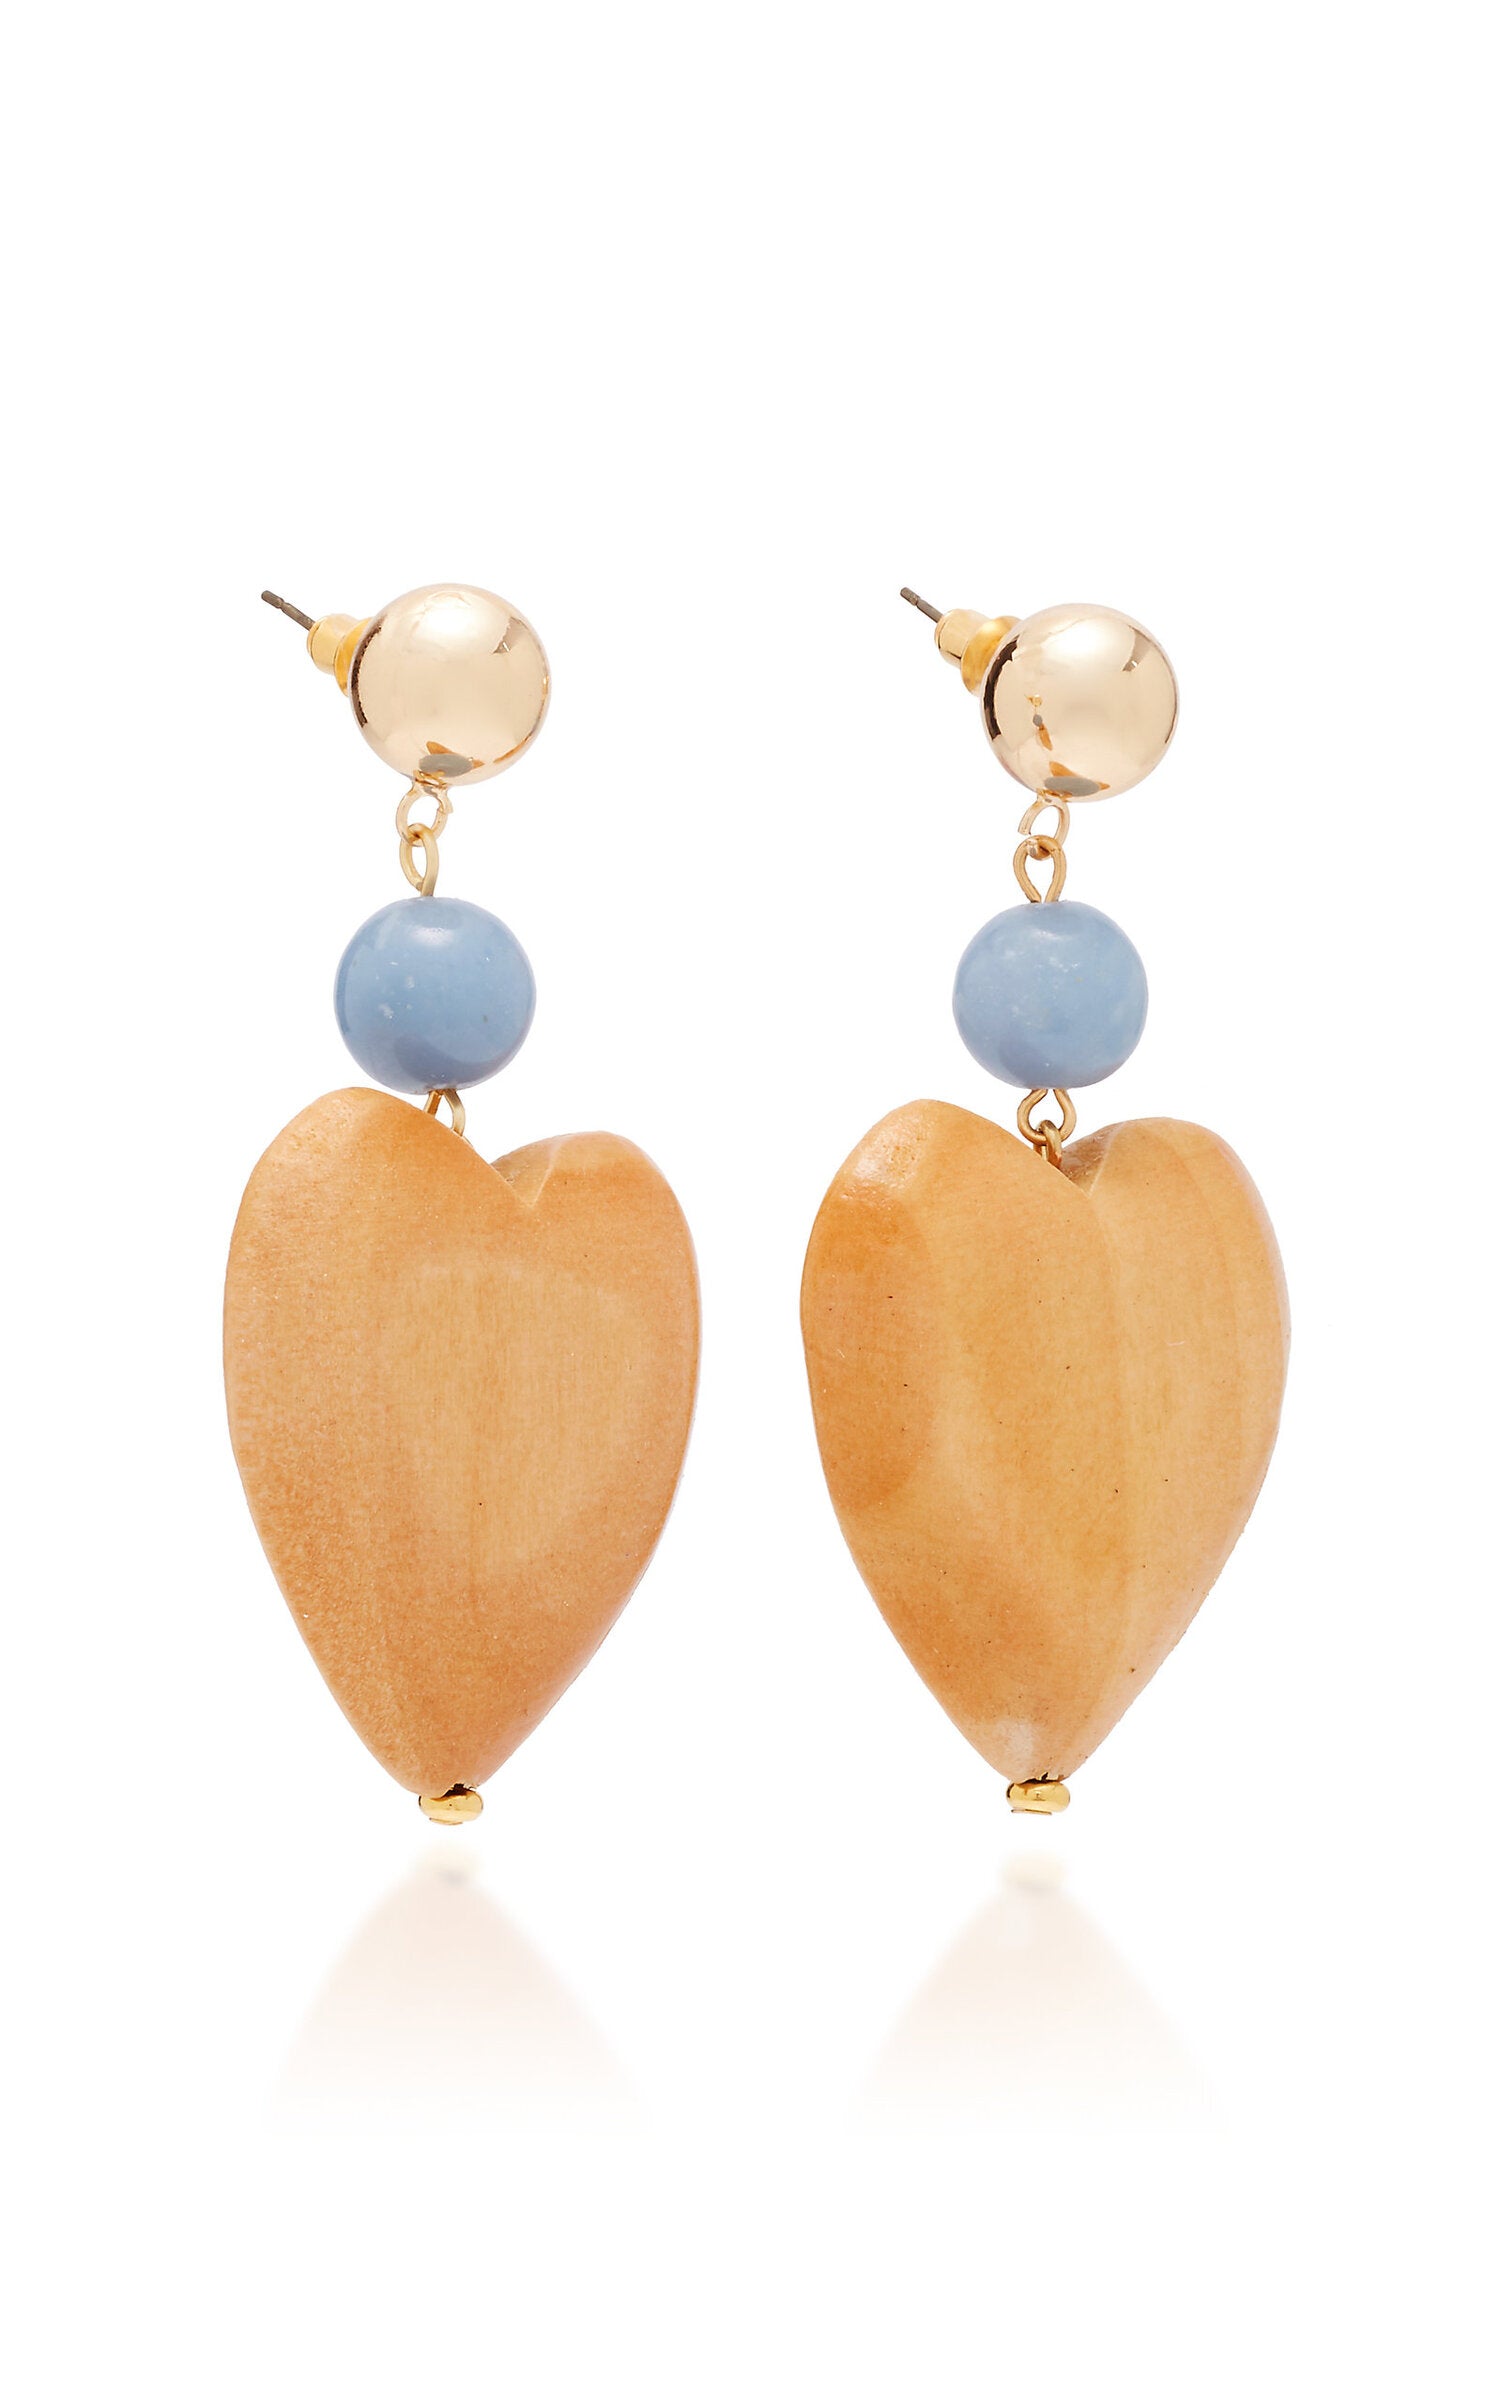 The Blue Heart Earrings by Sophie Monet